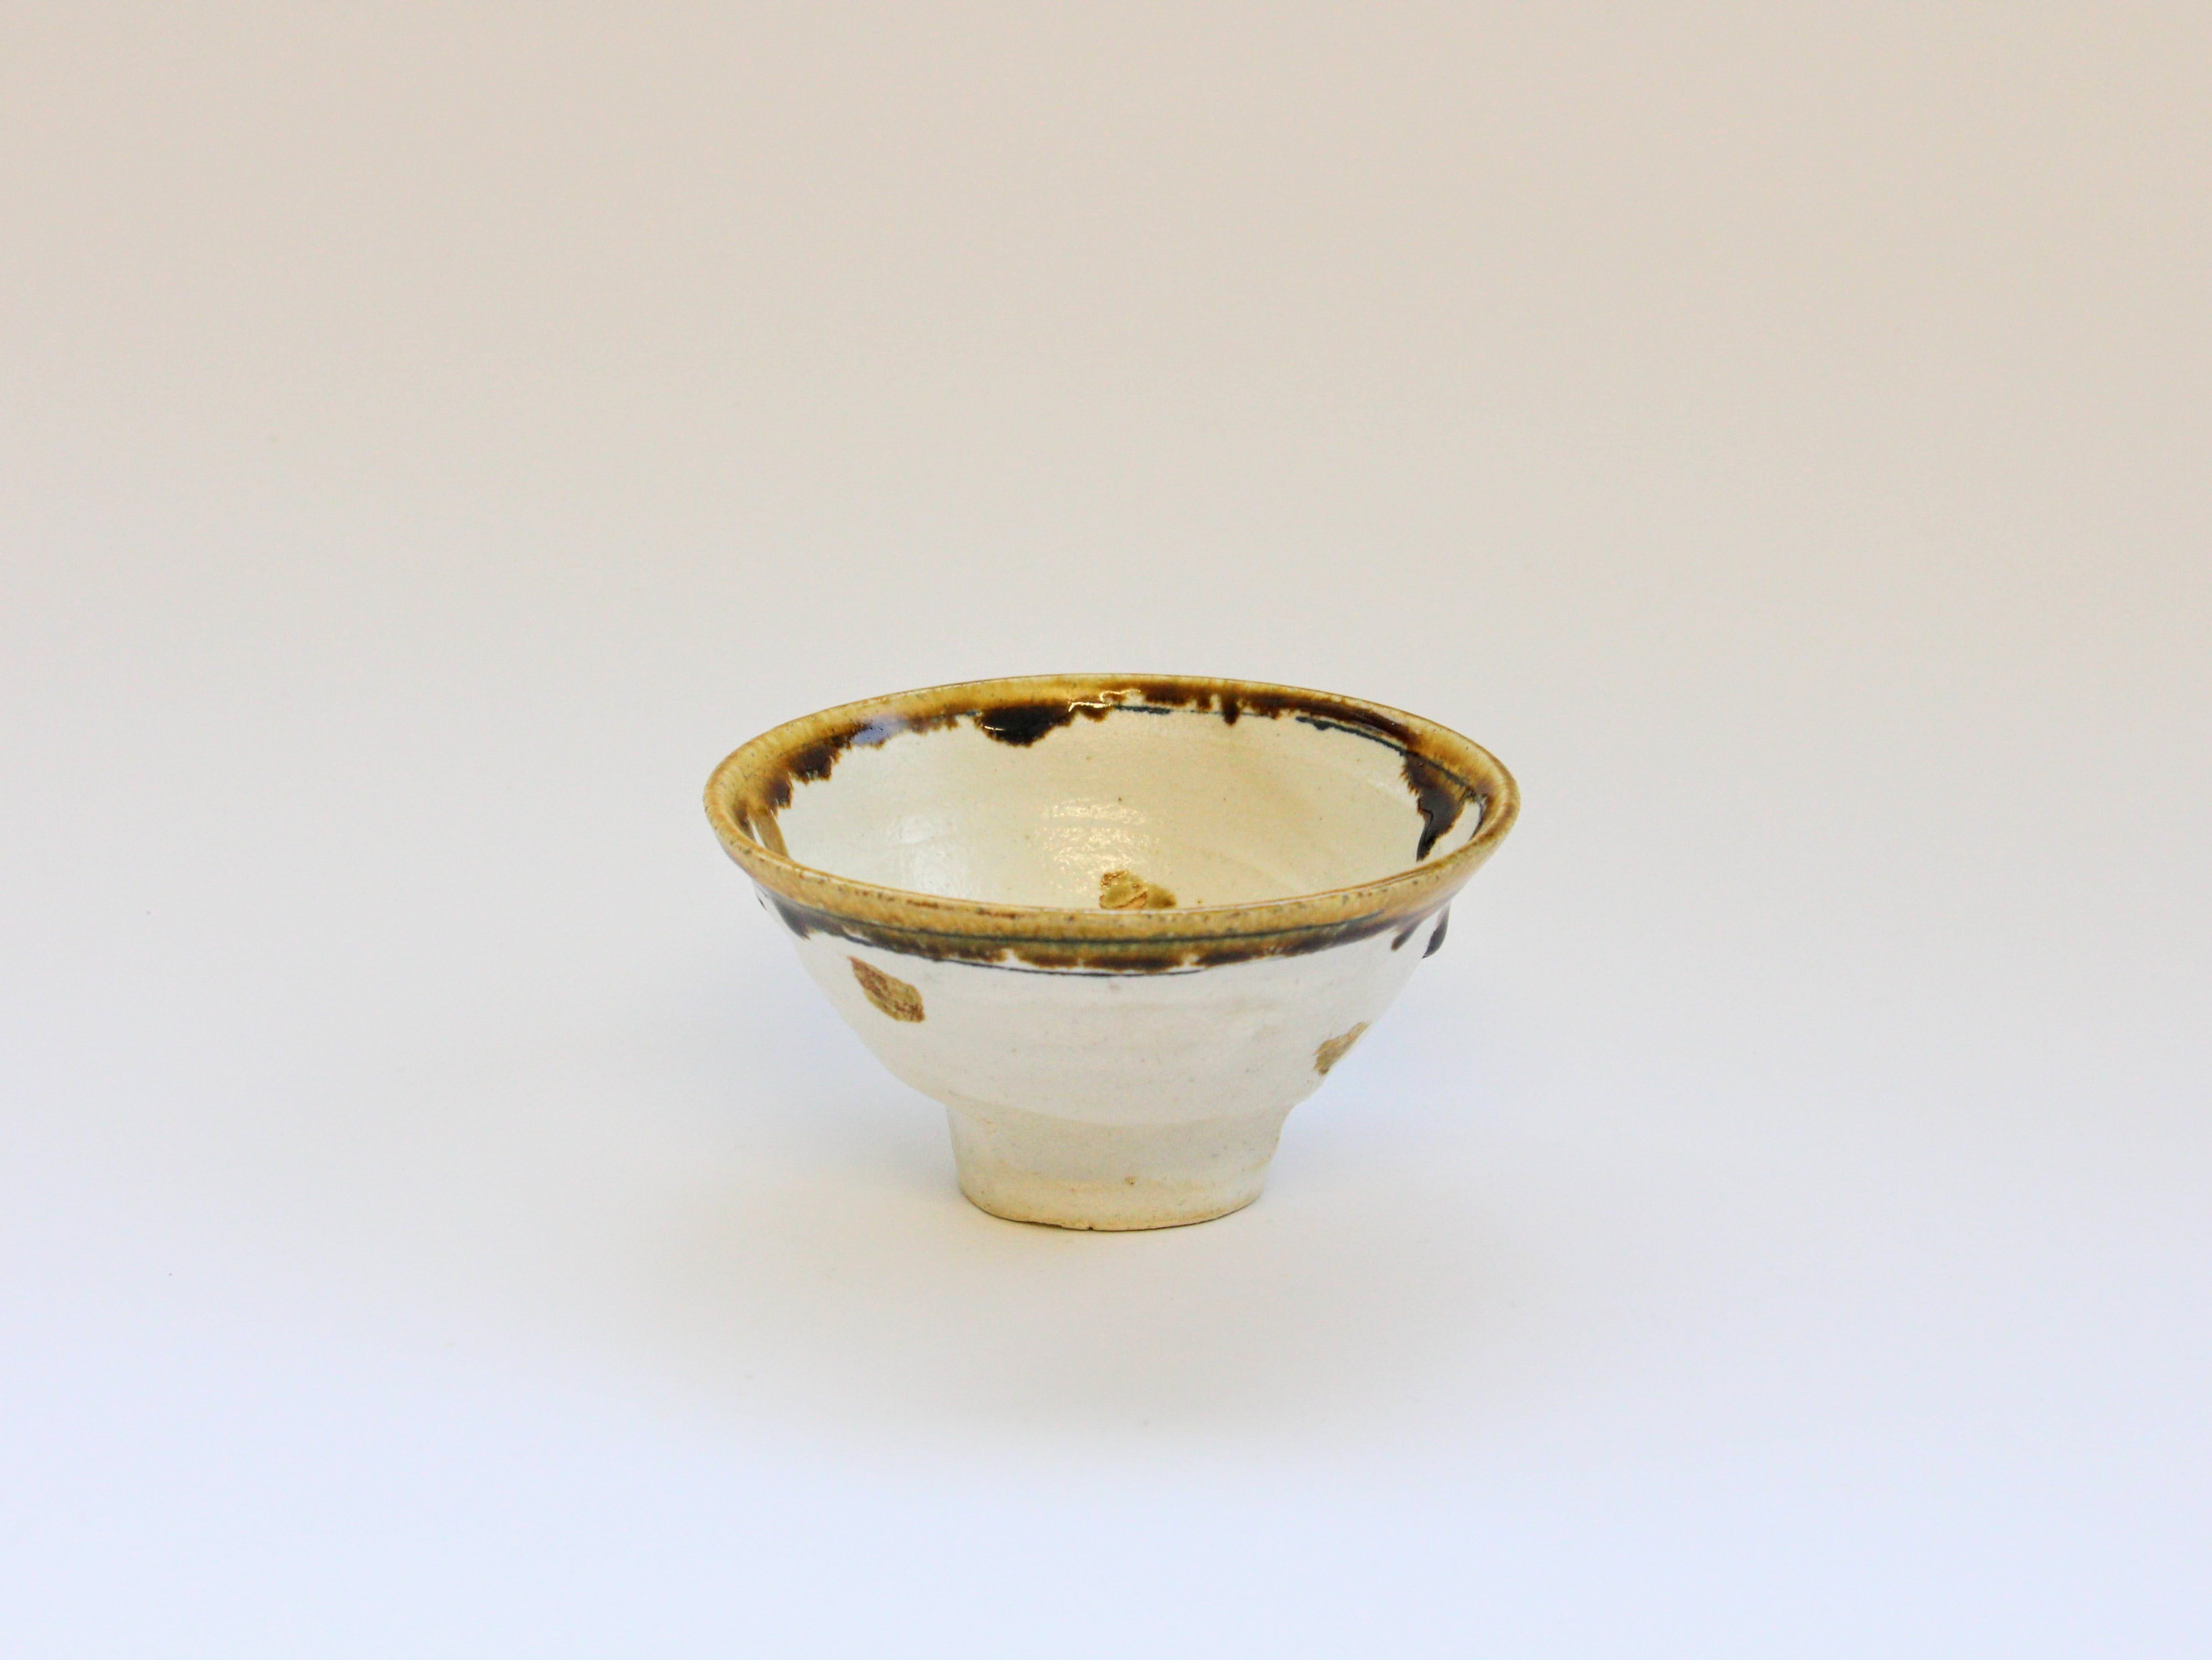 Rice bowl with white makeup lines and yellow dots [Kazuhito Yamamoto]